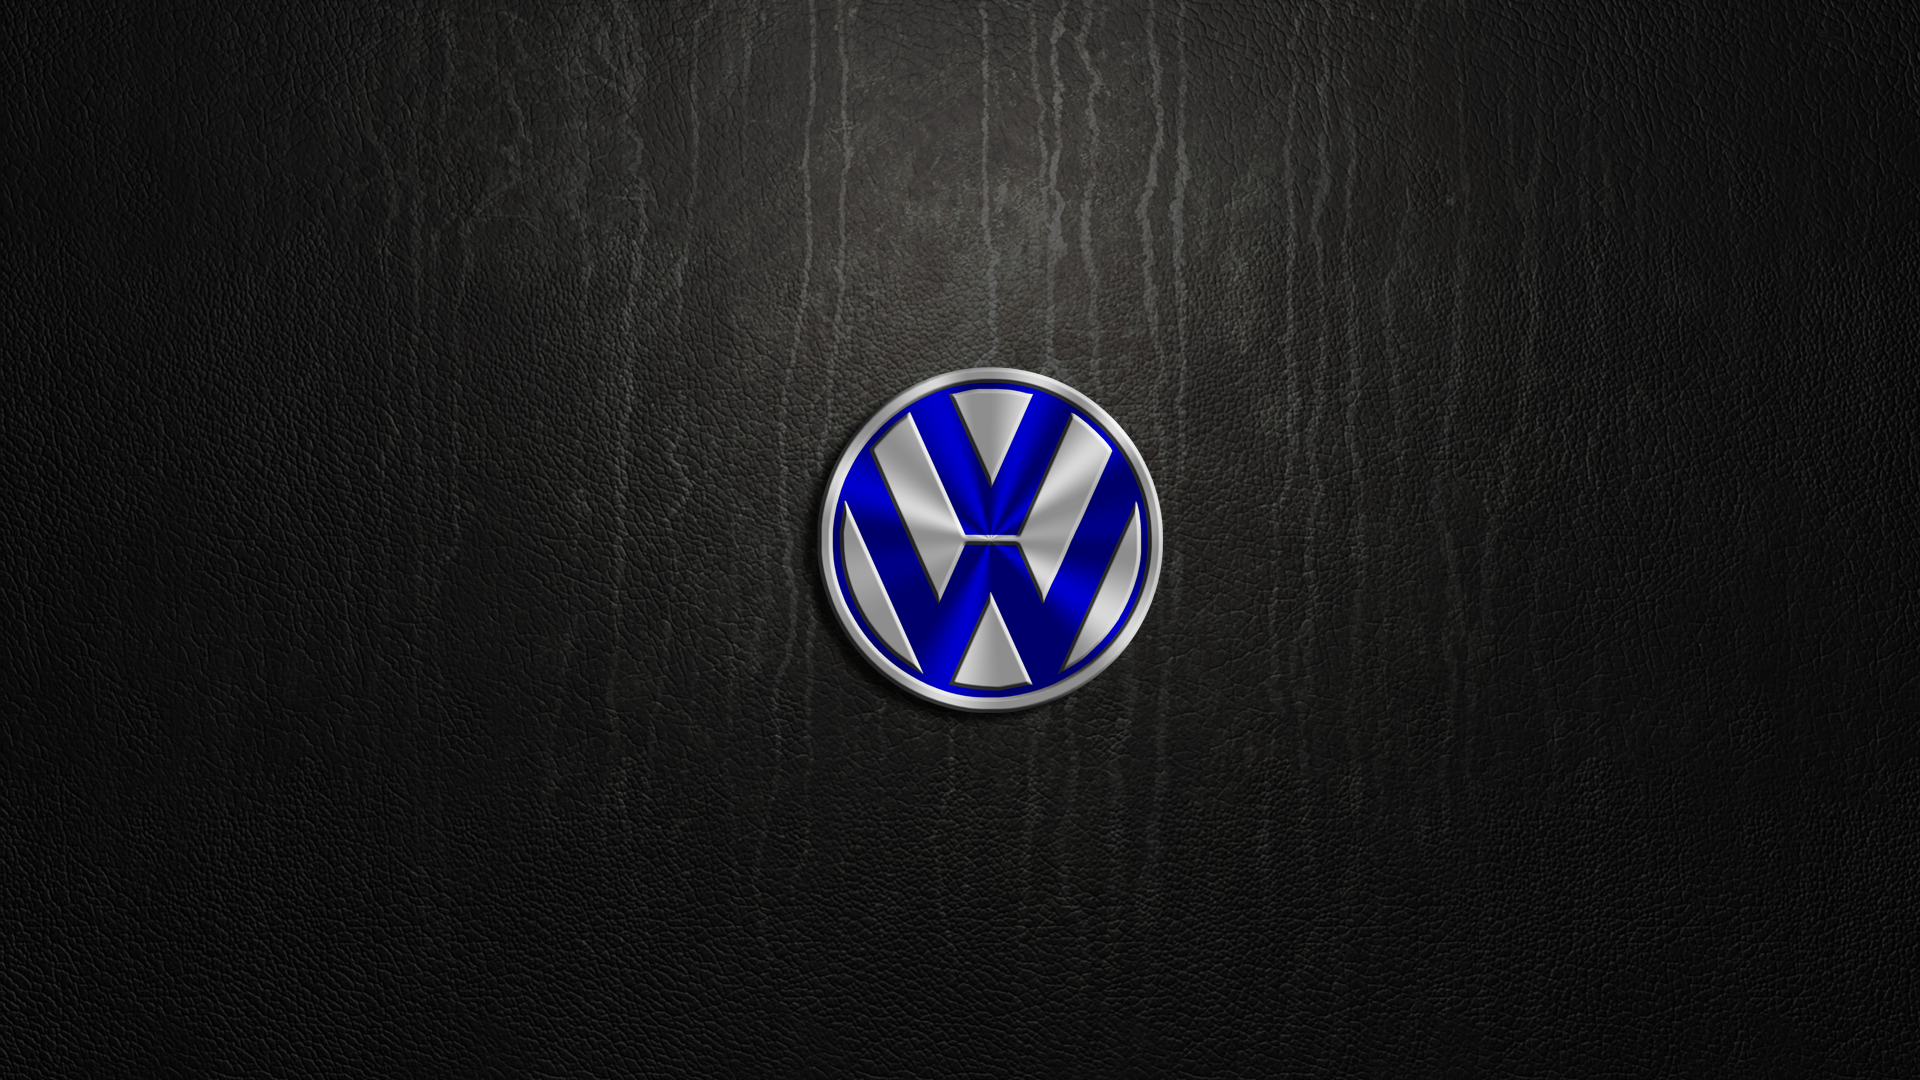  Volkswagen HD Wallpapers Backgrounds